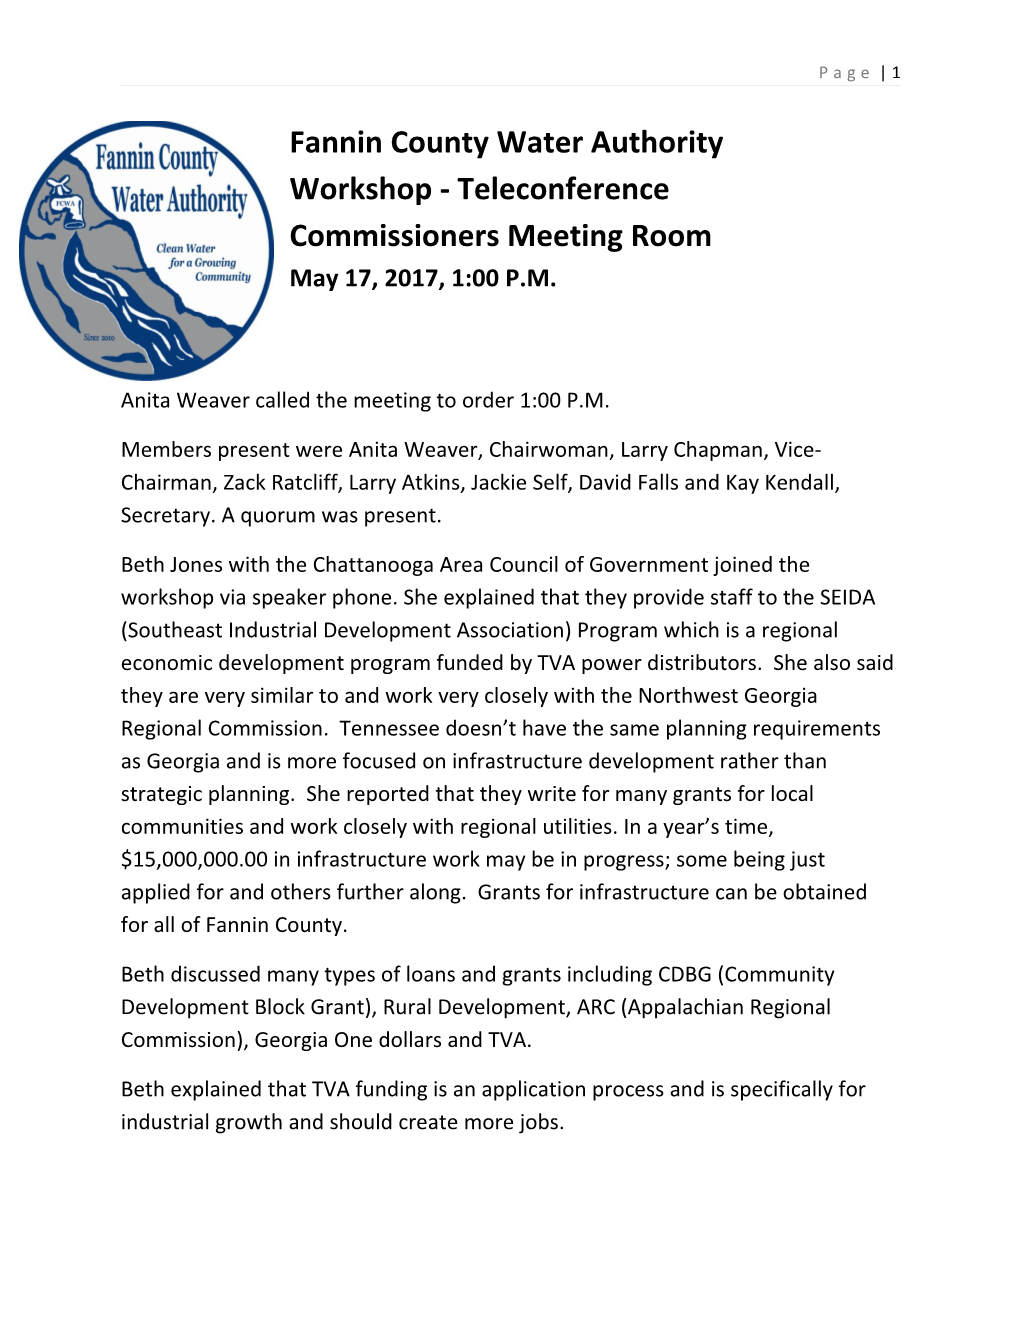 Workshop - Teleconference